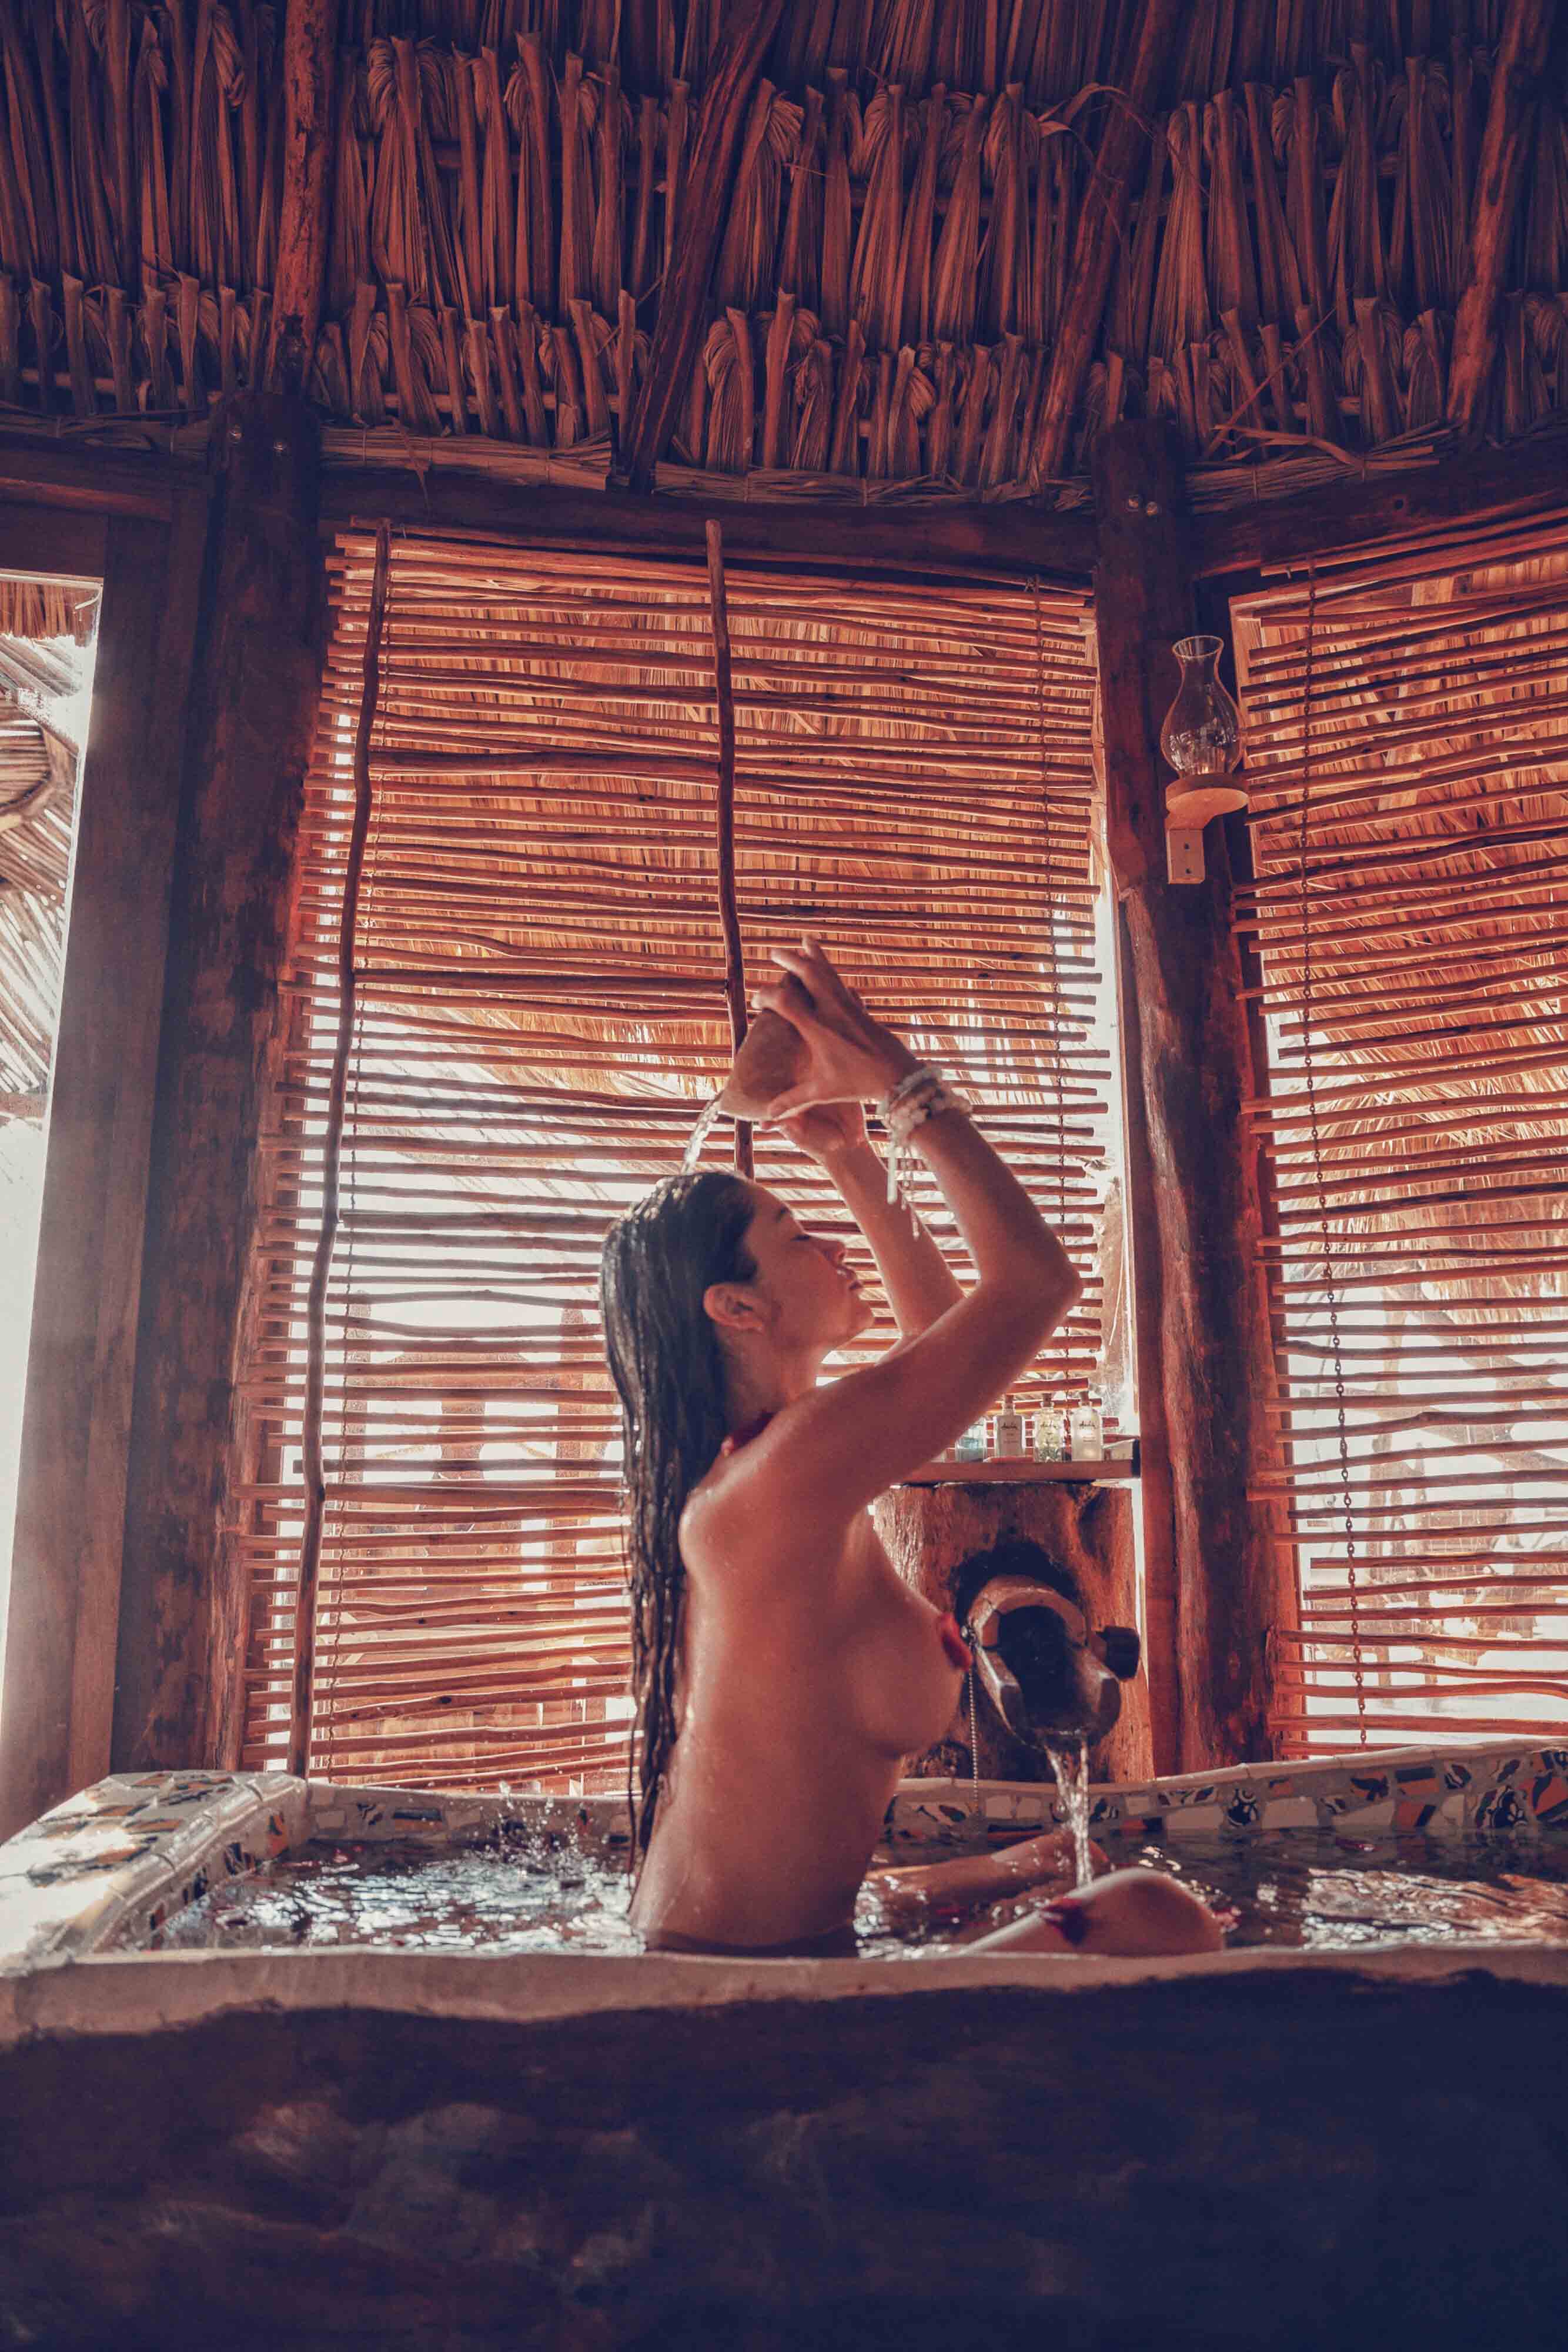 Arianny Celeste nude in TULUM MEXICO - Badboi photo shoot 20x UHQ photos 25.jpg